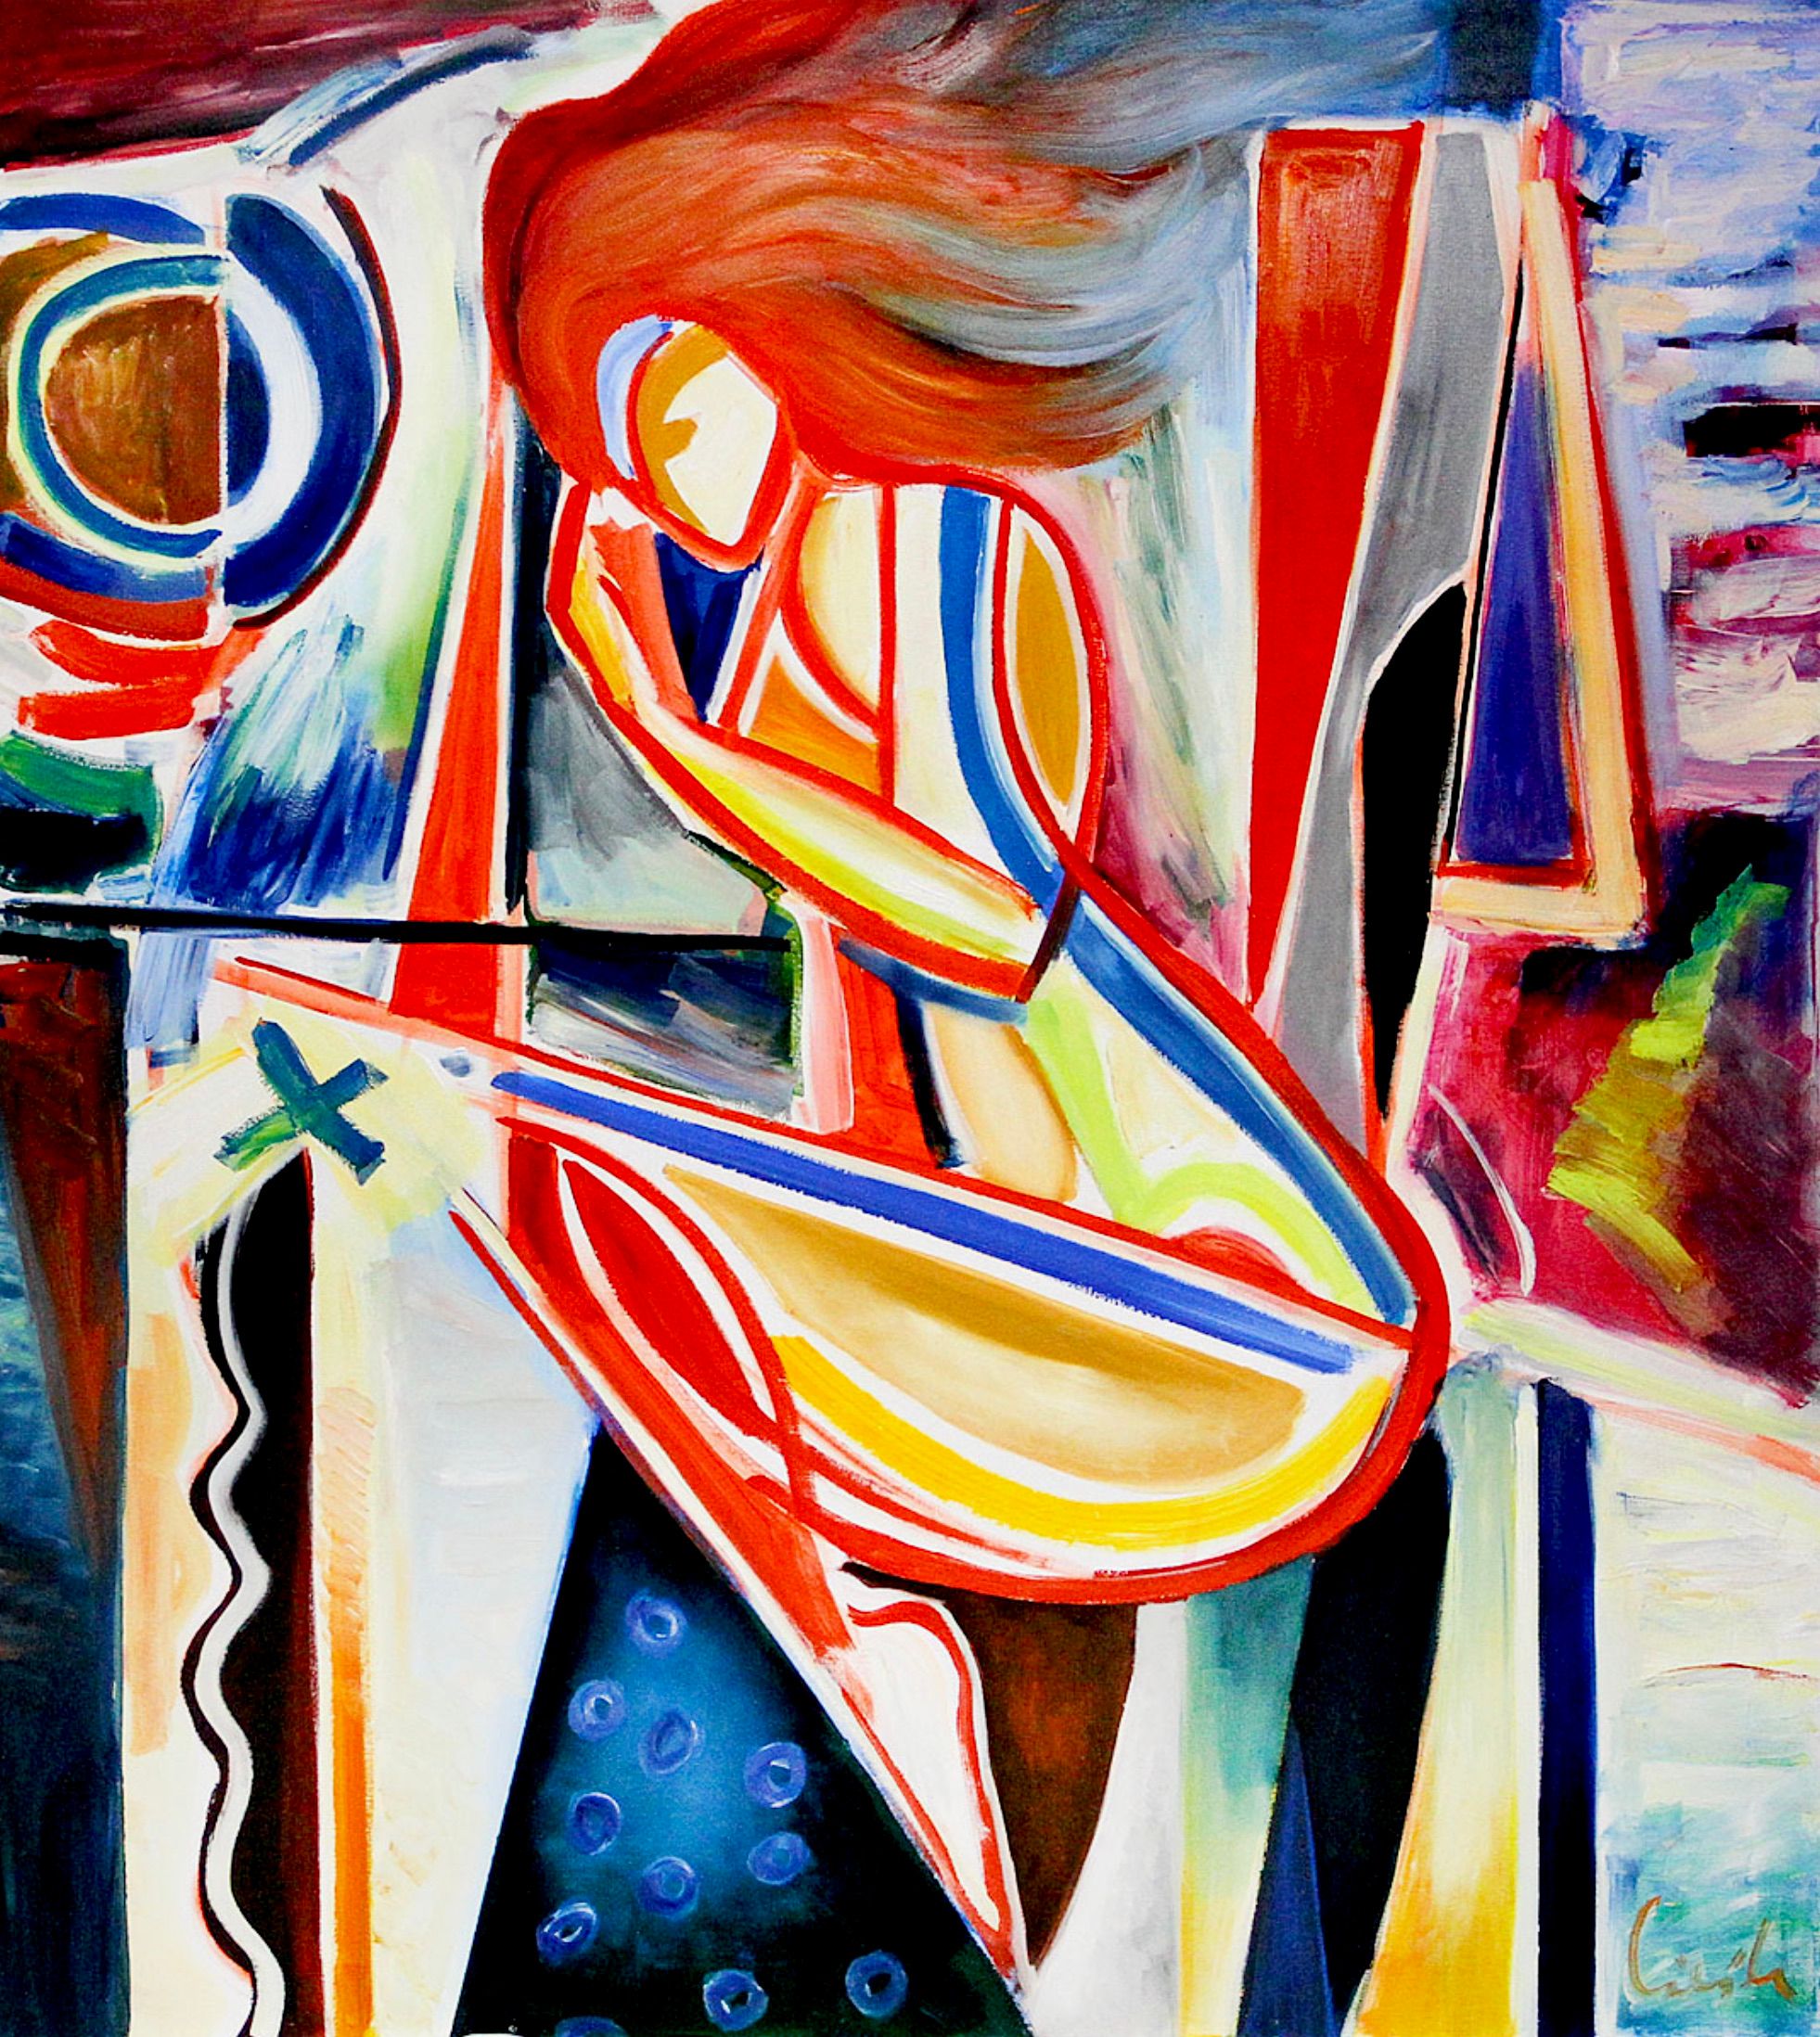 MECESLA Maciej Cieśla, "A letto", dipinto astratto di una giovane ragazza in forme geometriche e combinazioni di colori aggressivi con accenti rossi.